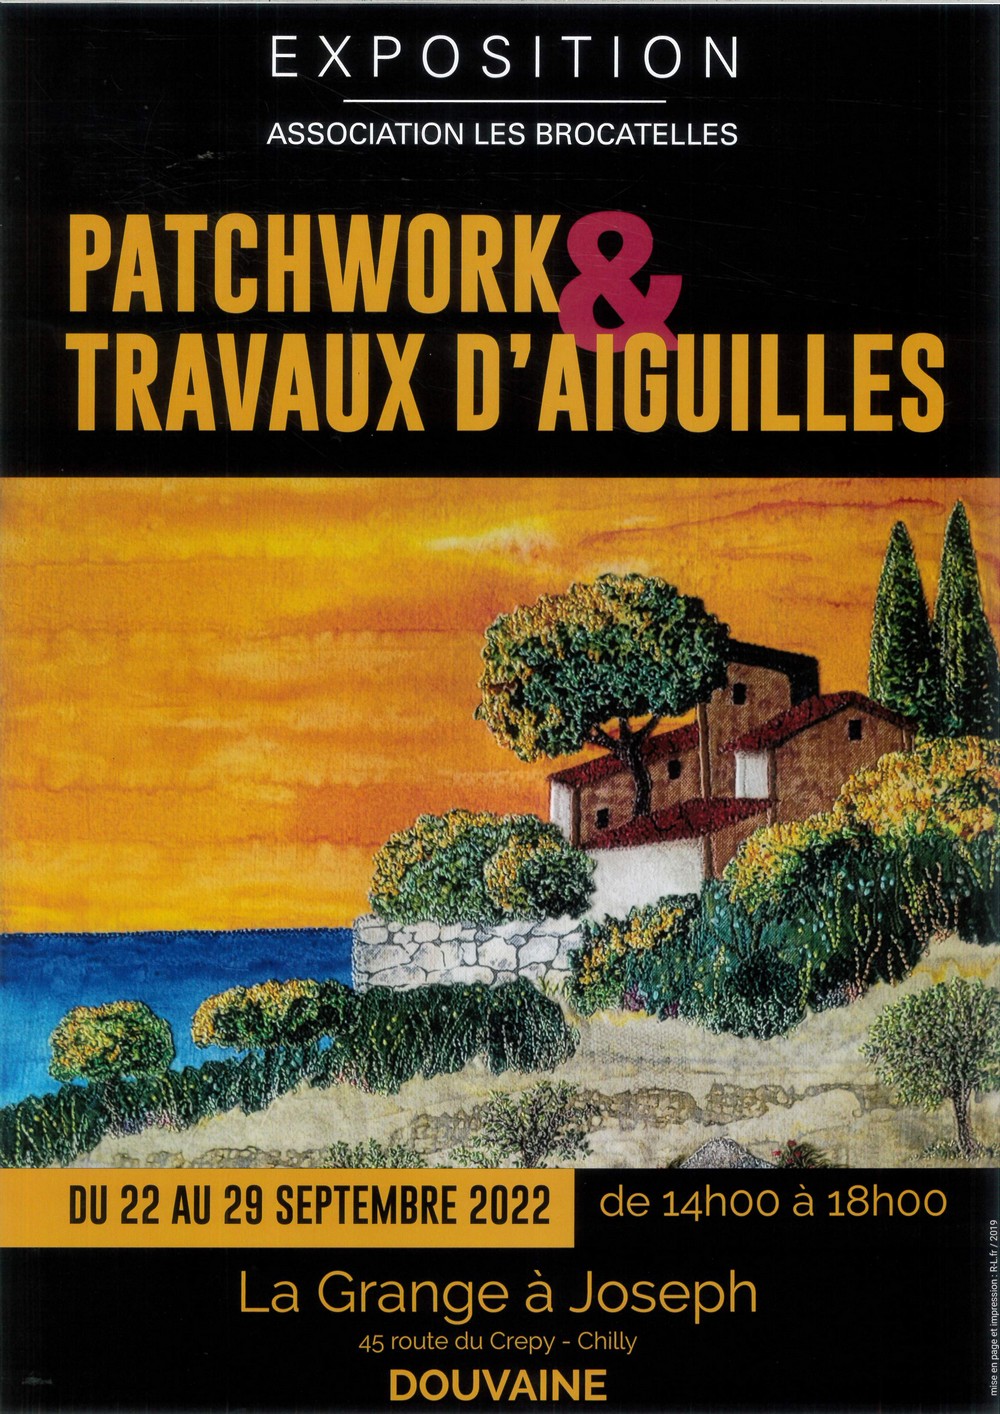 Exposition Patchwork & Travaux d’aiguilles